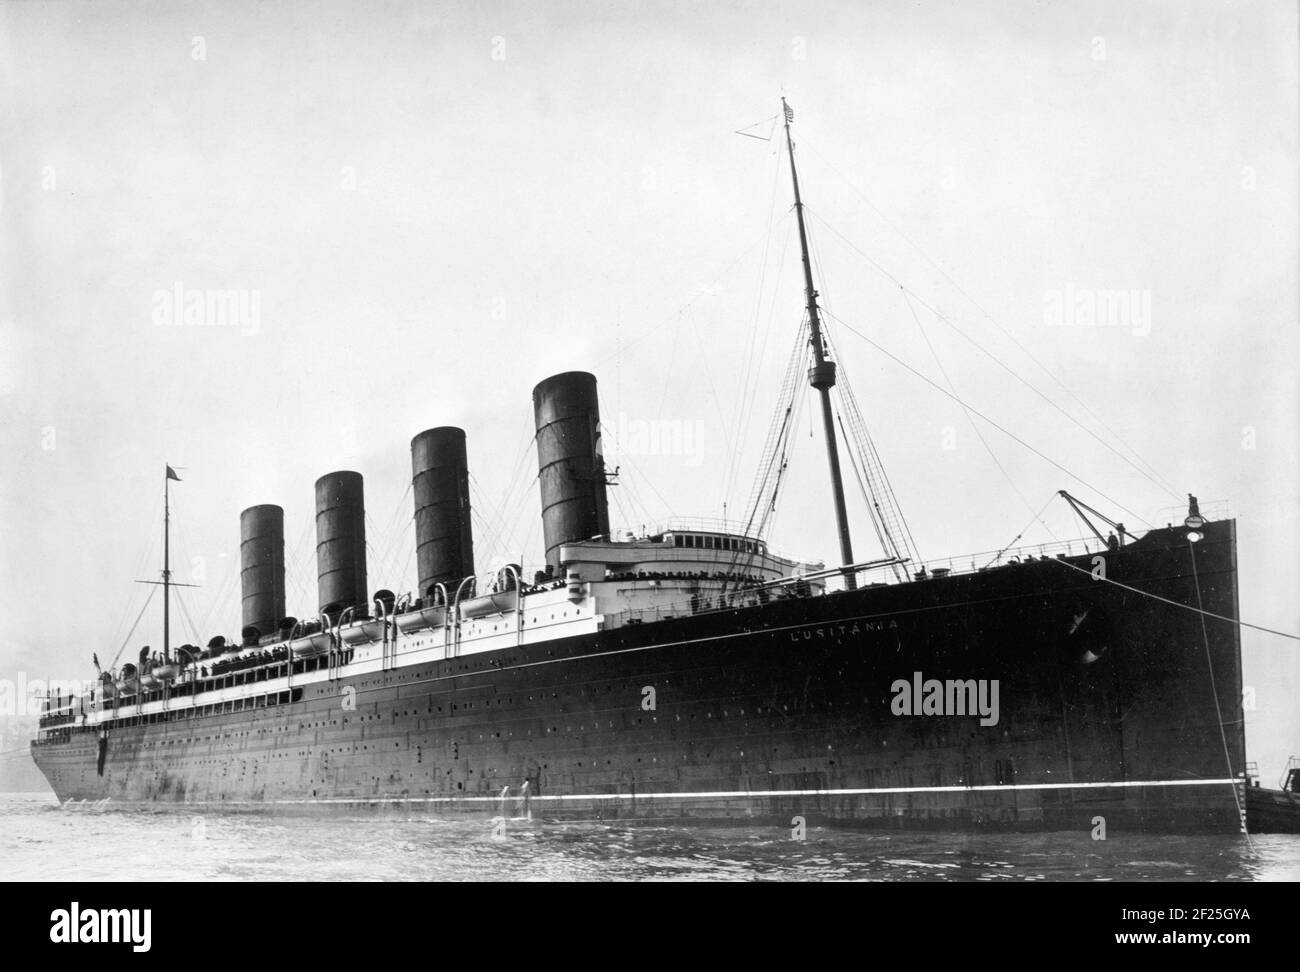 Lusitania. RMS Lusitania entrant dans le port, vers 1907-1913 Banque D'Images